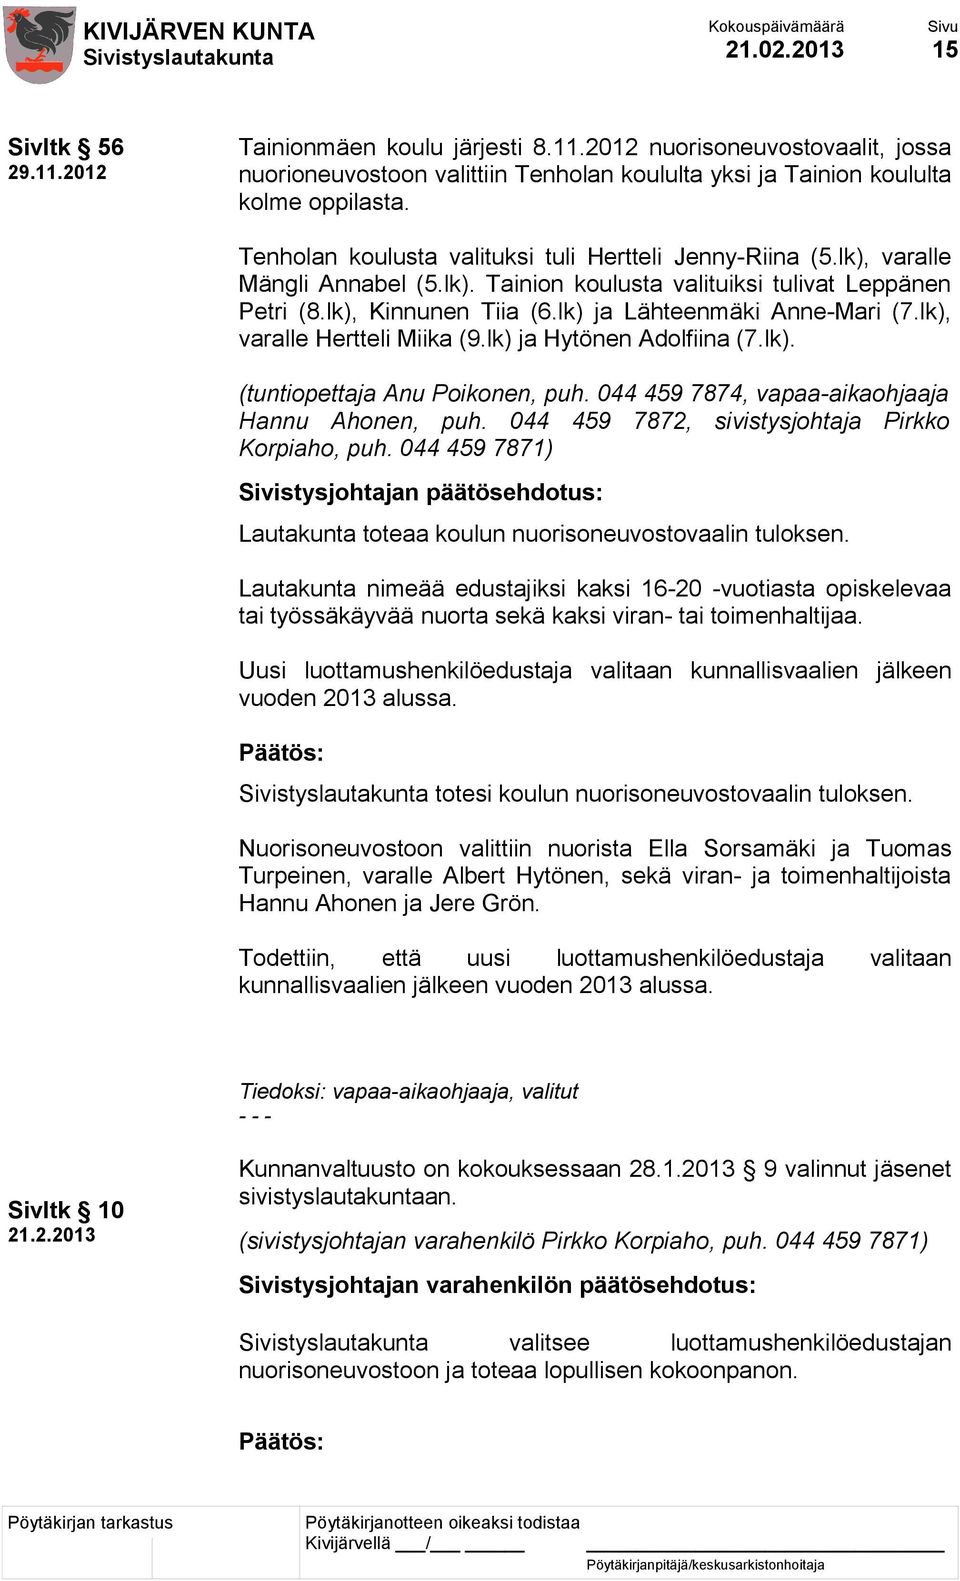 lk) ja Lähteenmäki Anne-Mari (7.lk), varalle Hertteli Miika (9.lk) ja Hytönen Adolfiina (7.lk). (tuntiopettaja Anu Poikonen, puh. 044 459 7874, vapaa-aikaohjaaja Hannu Ahonen, puh.